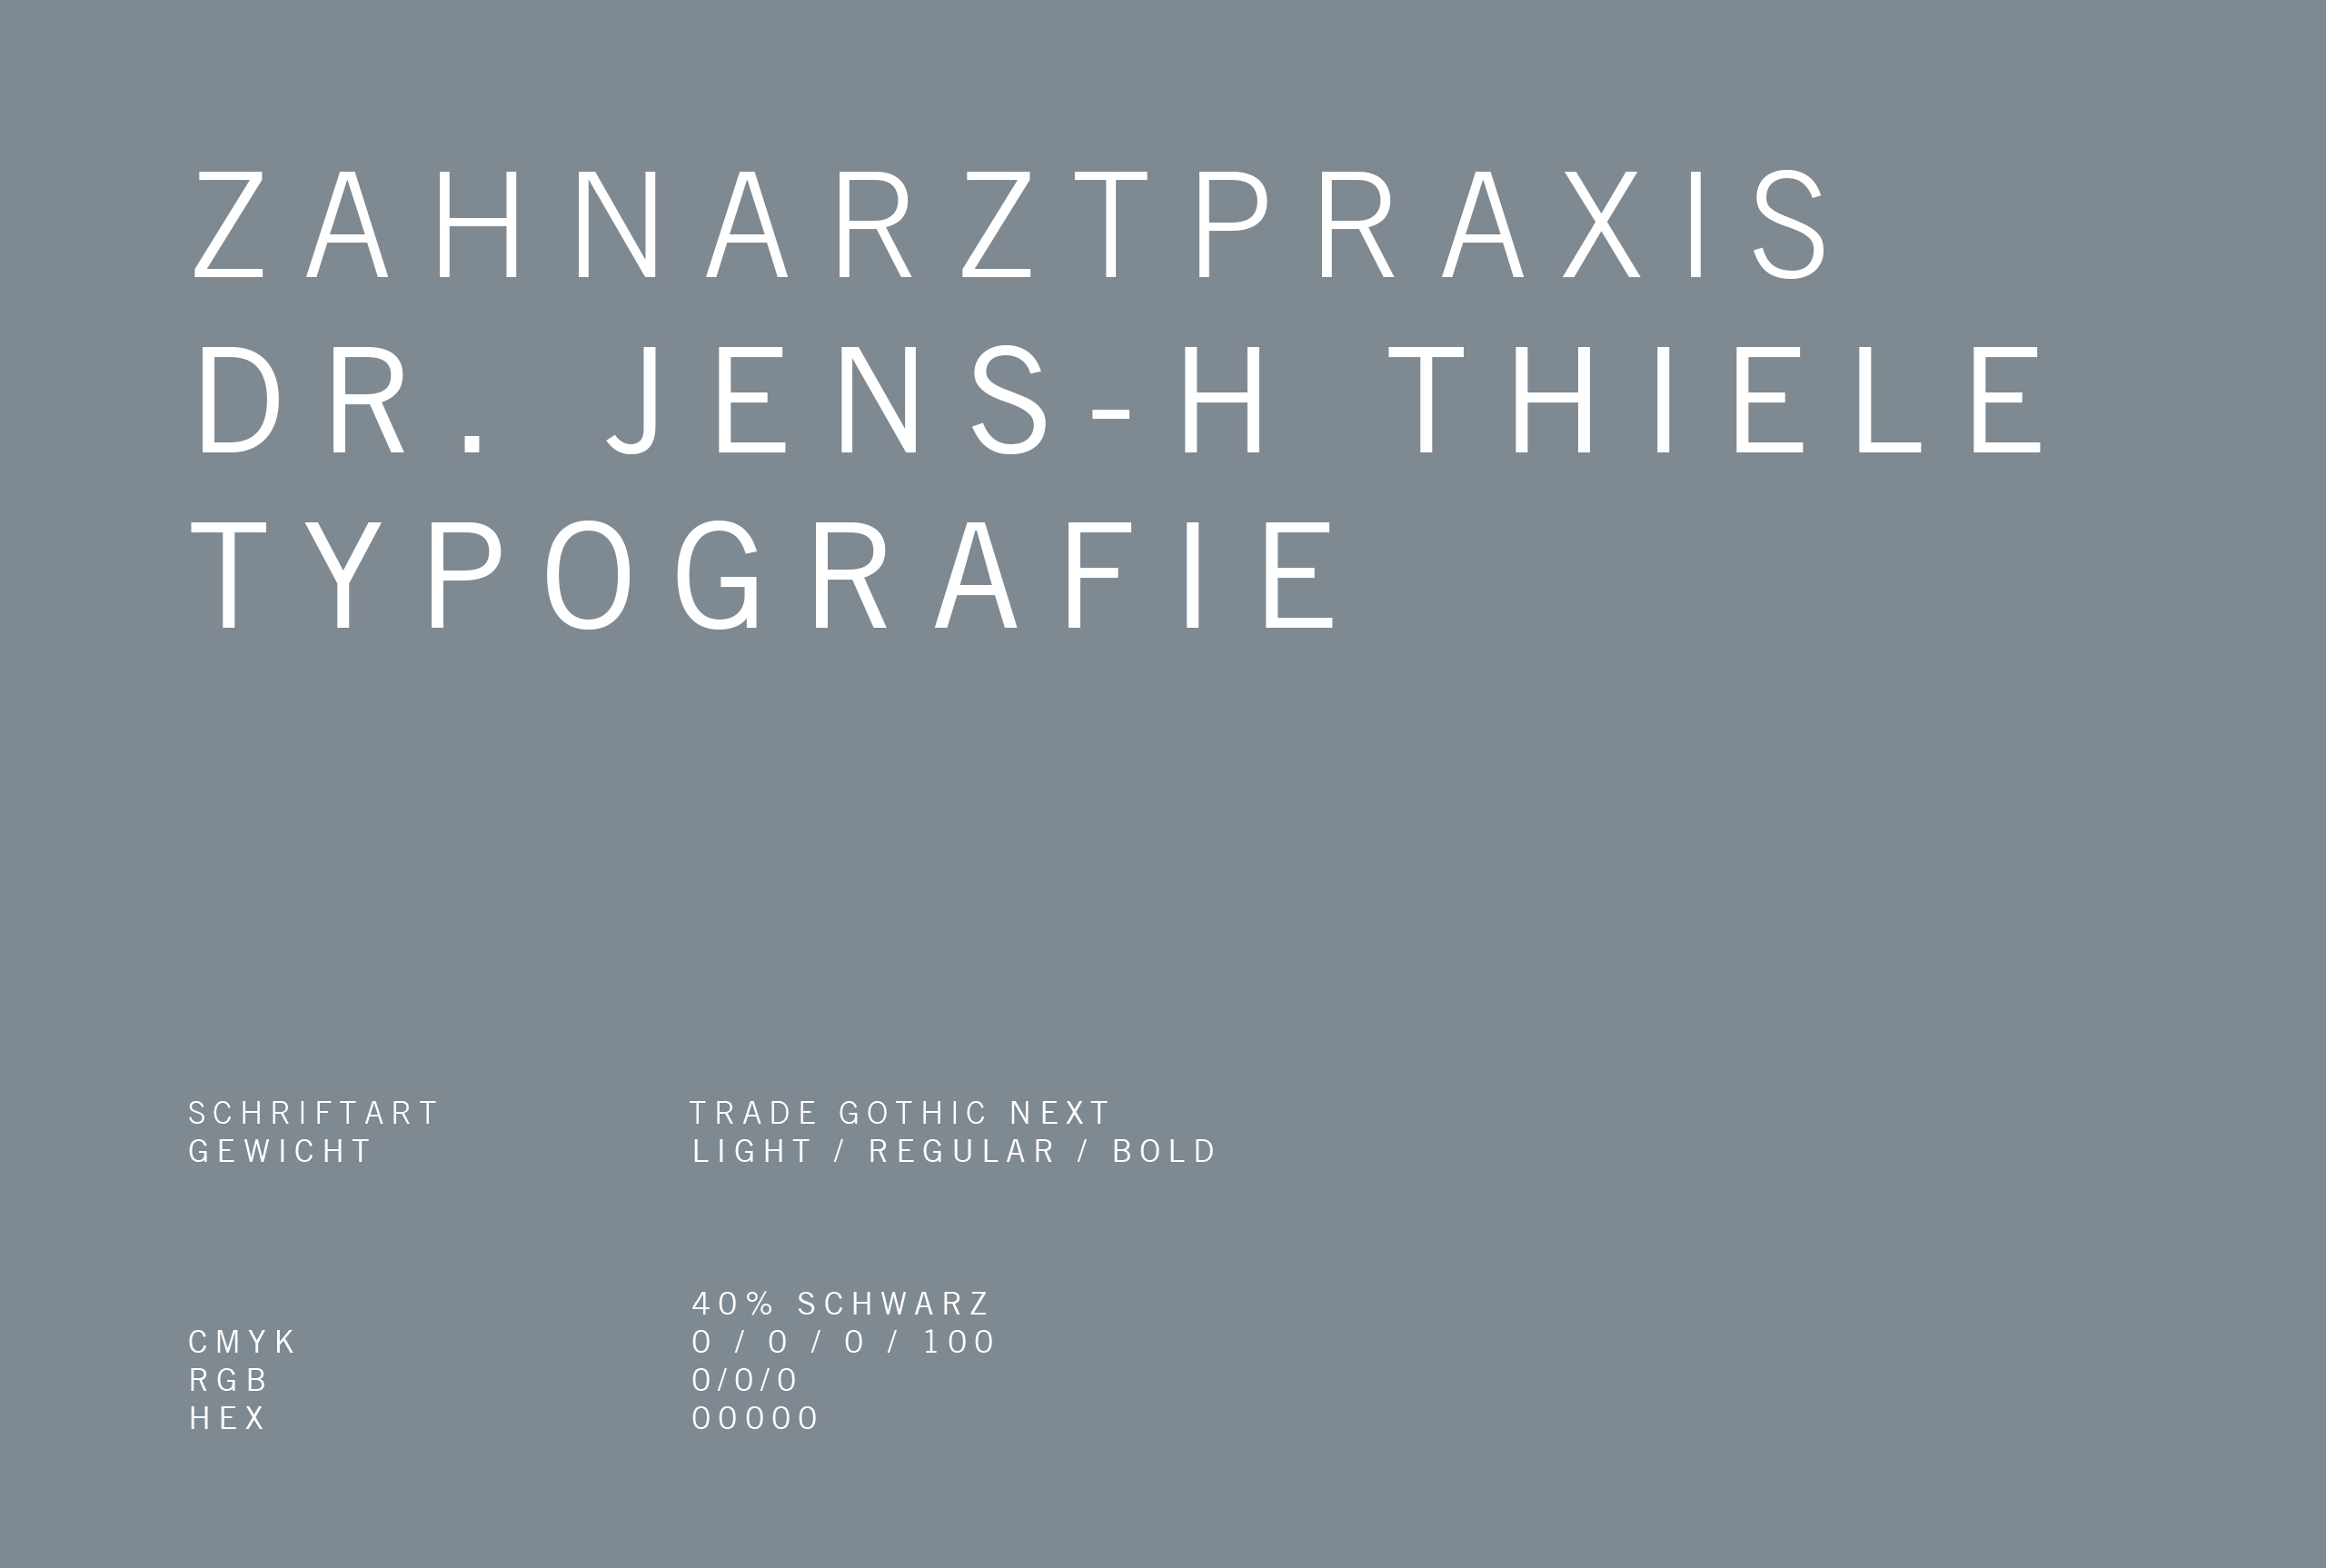 Dr. Jens-H. Thiele Typografie